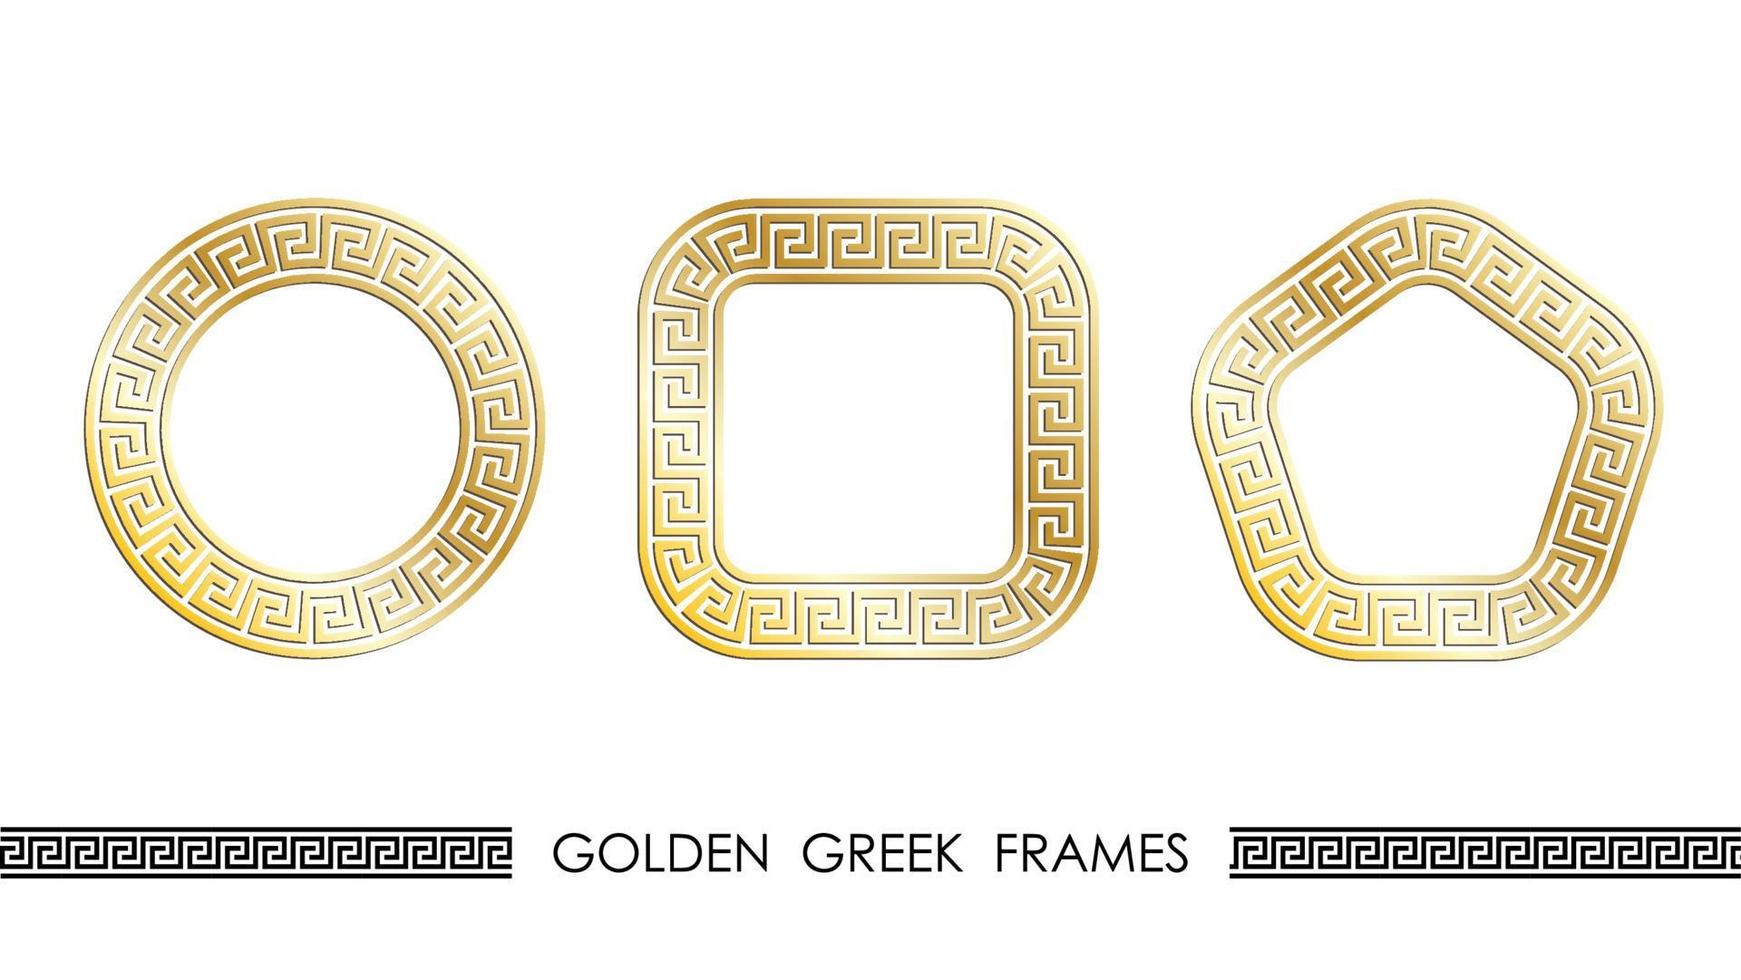 ensemble de cadres ronds et carrés grecs dorés pour les en-têtes décoratifs. ornements grecs anciens dorés isolés sur fond blanc. vecteur